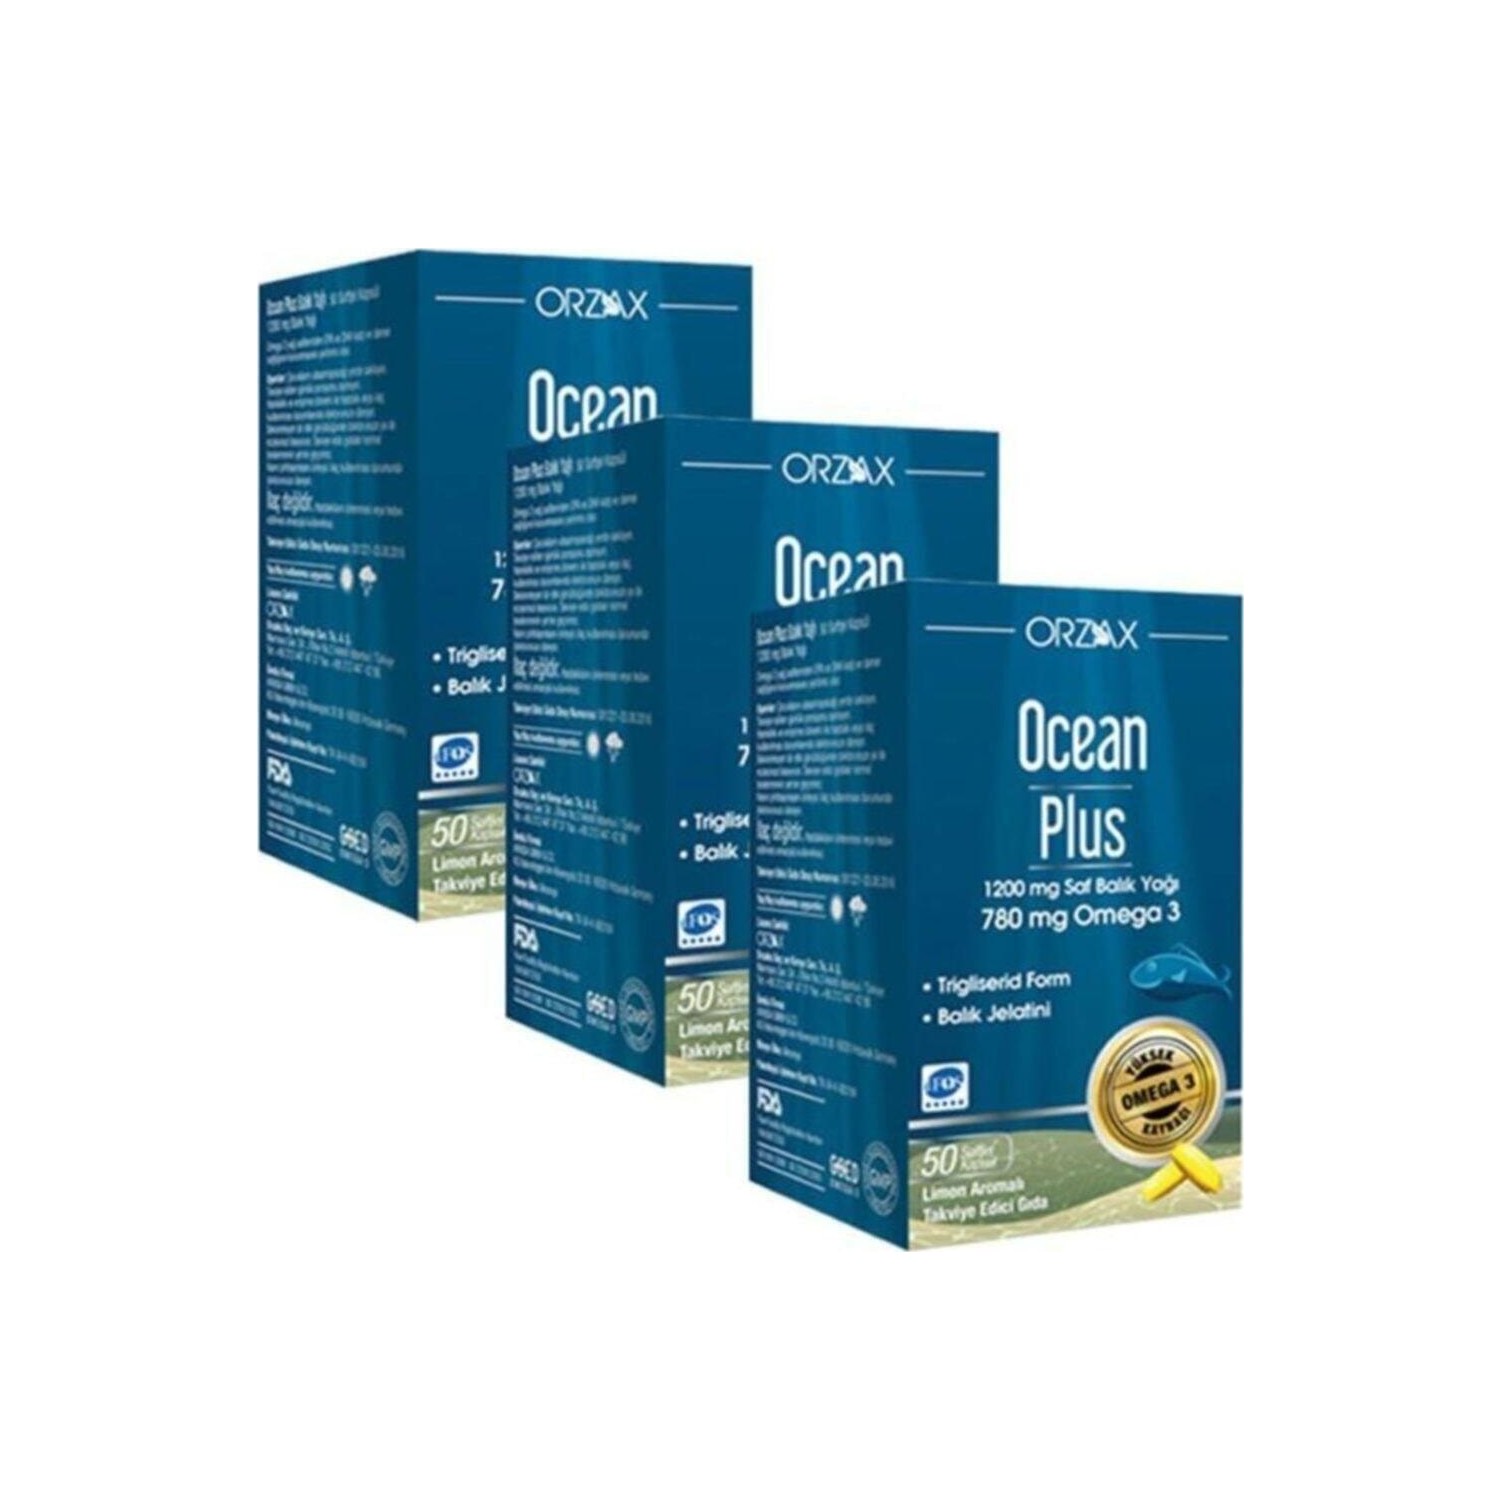 Омега-3 Plus Orzax 1200 мг, 3 упаковки по 50 капсул омега 3 natrol omega 3 fish oil 1200 мг в капсулах 60 шт